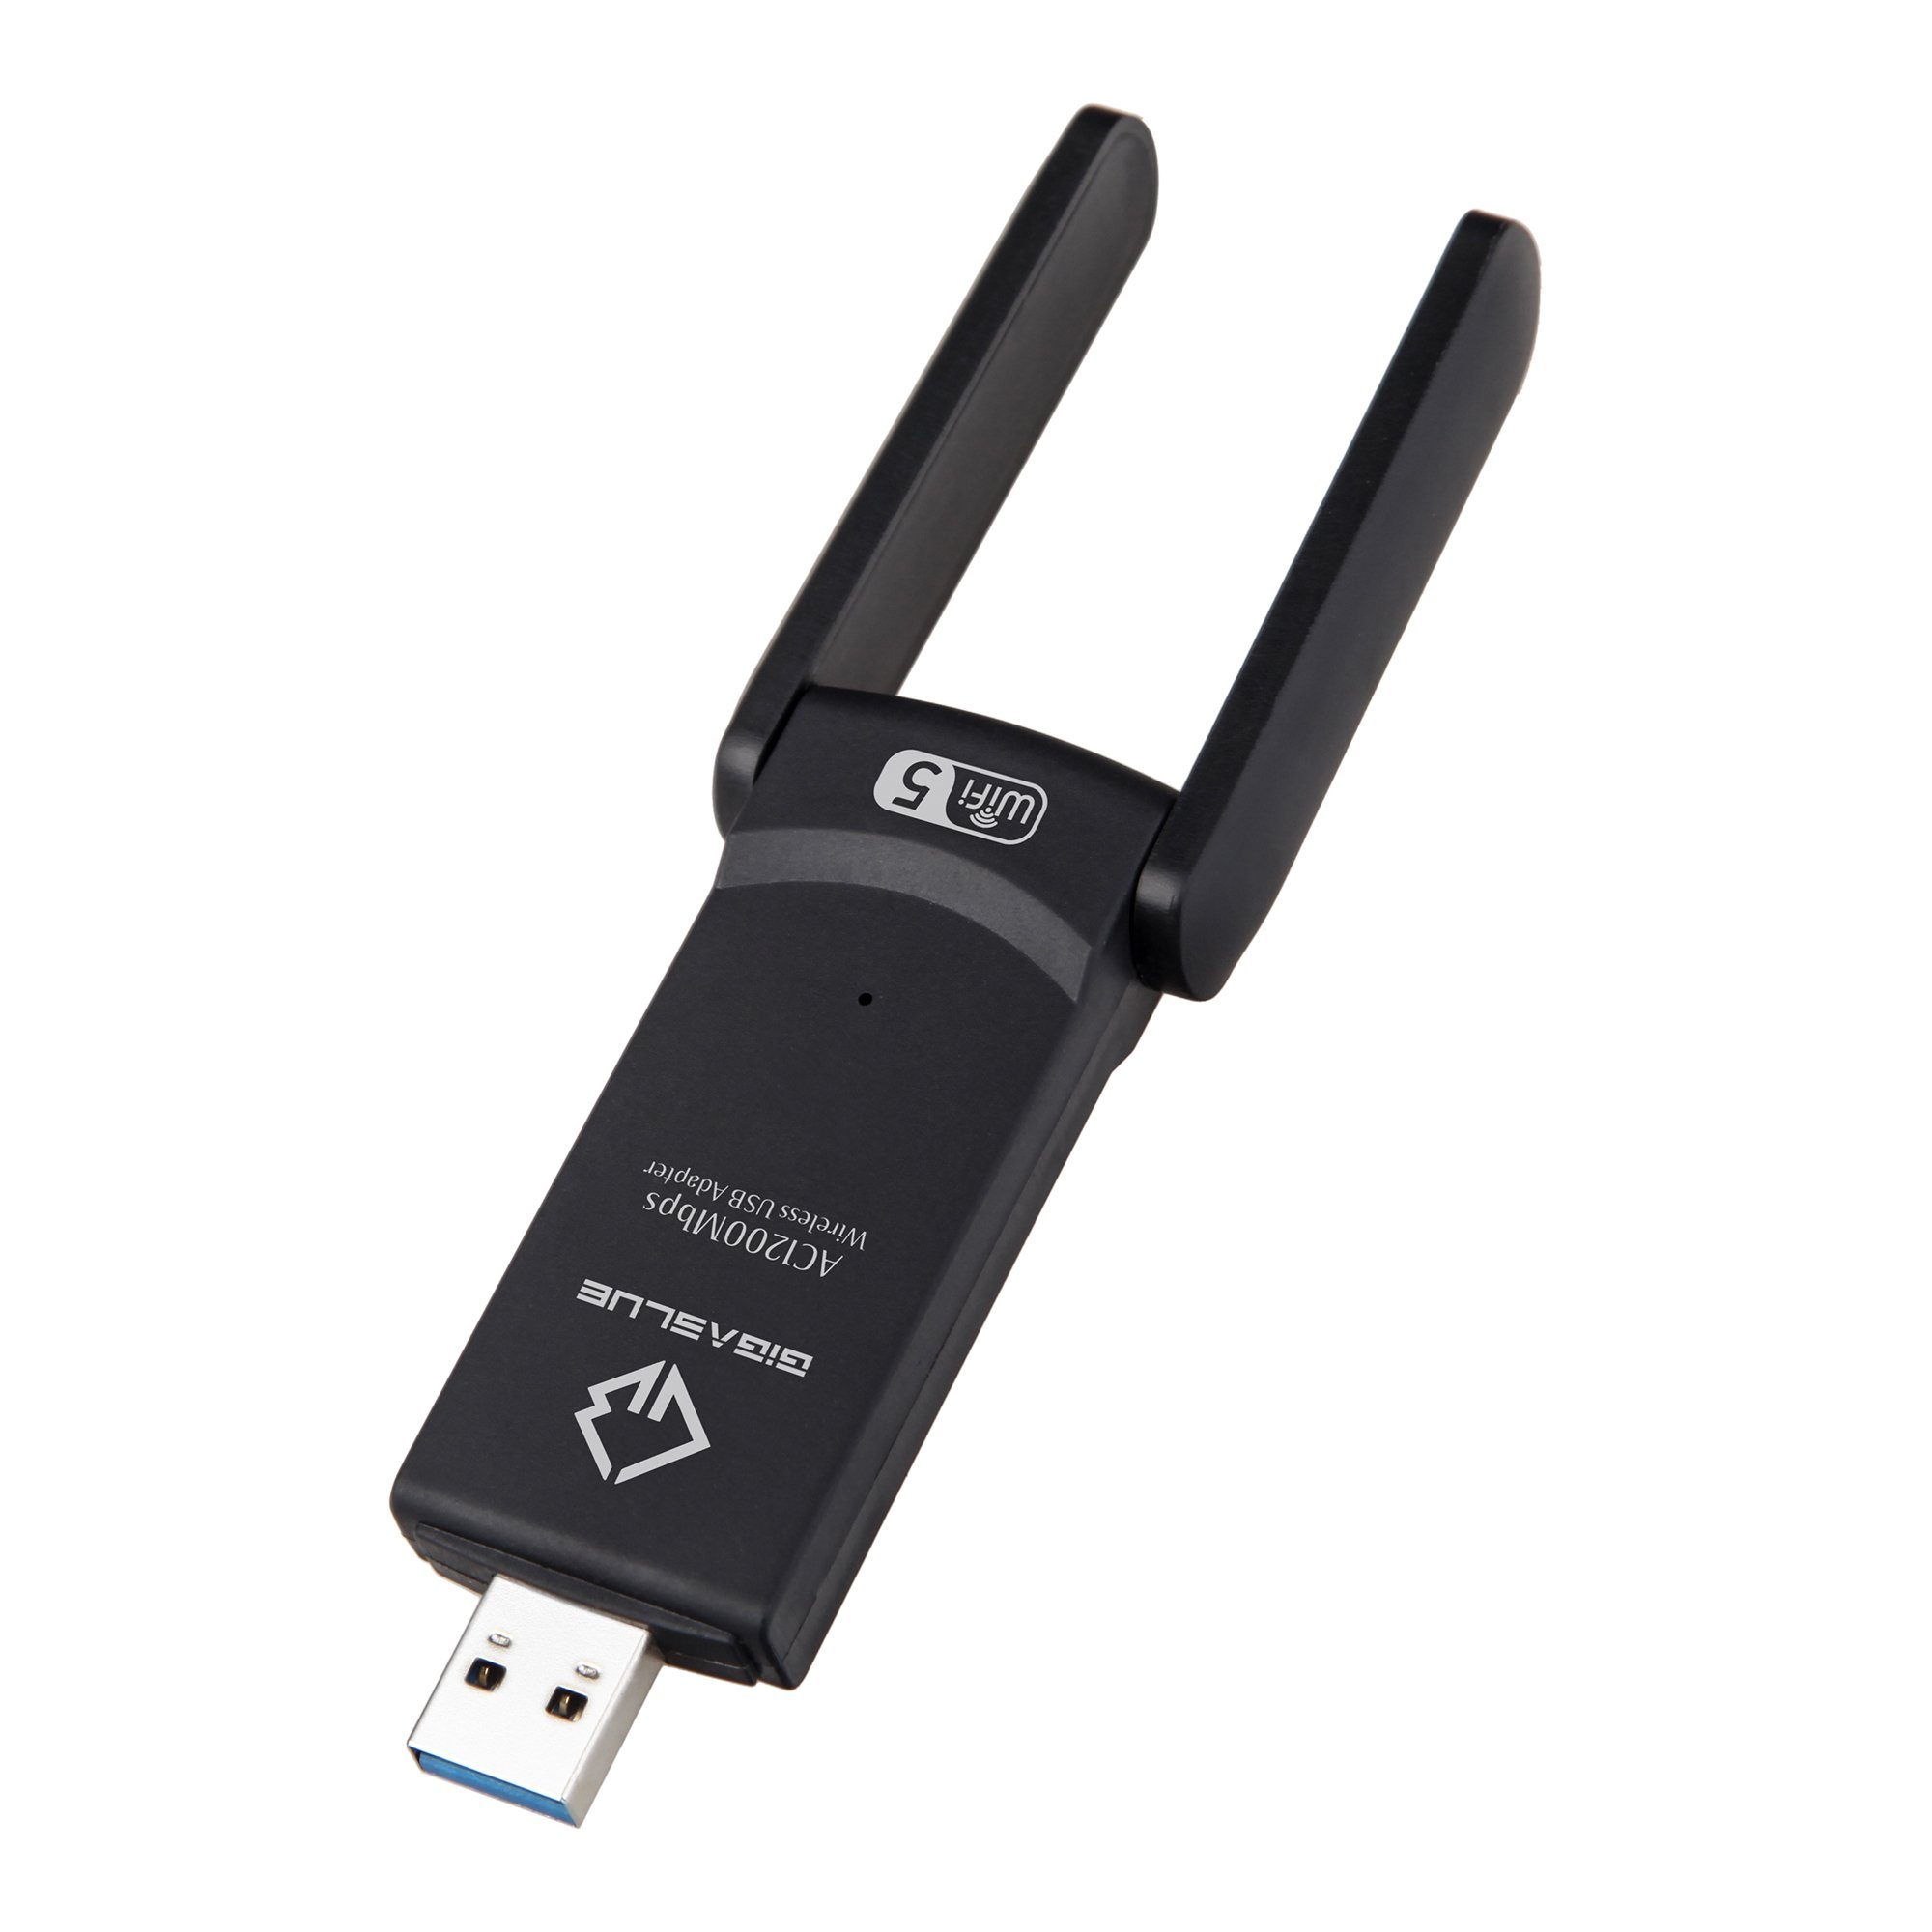 USB 3.0 GigaBlue 1200Mbps Kabel-Receiver Gigablue adapter WiFi